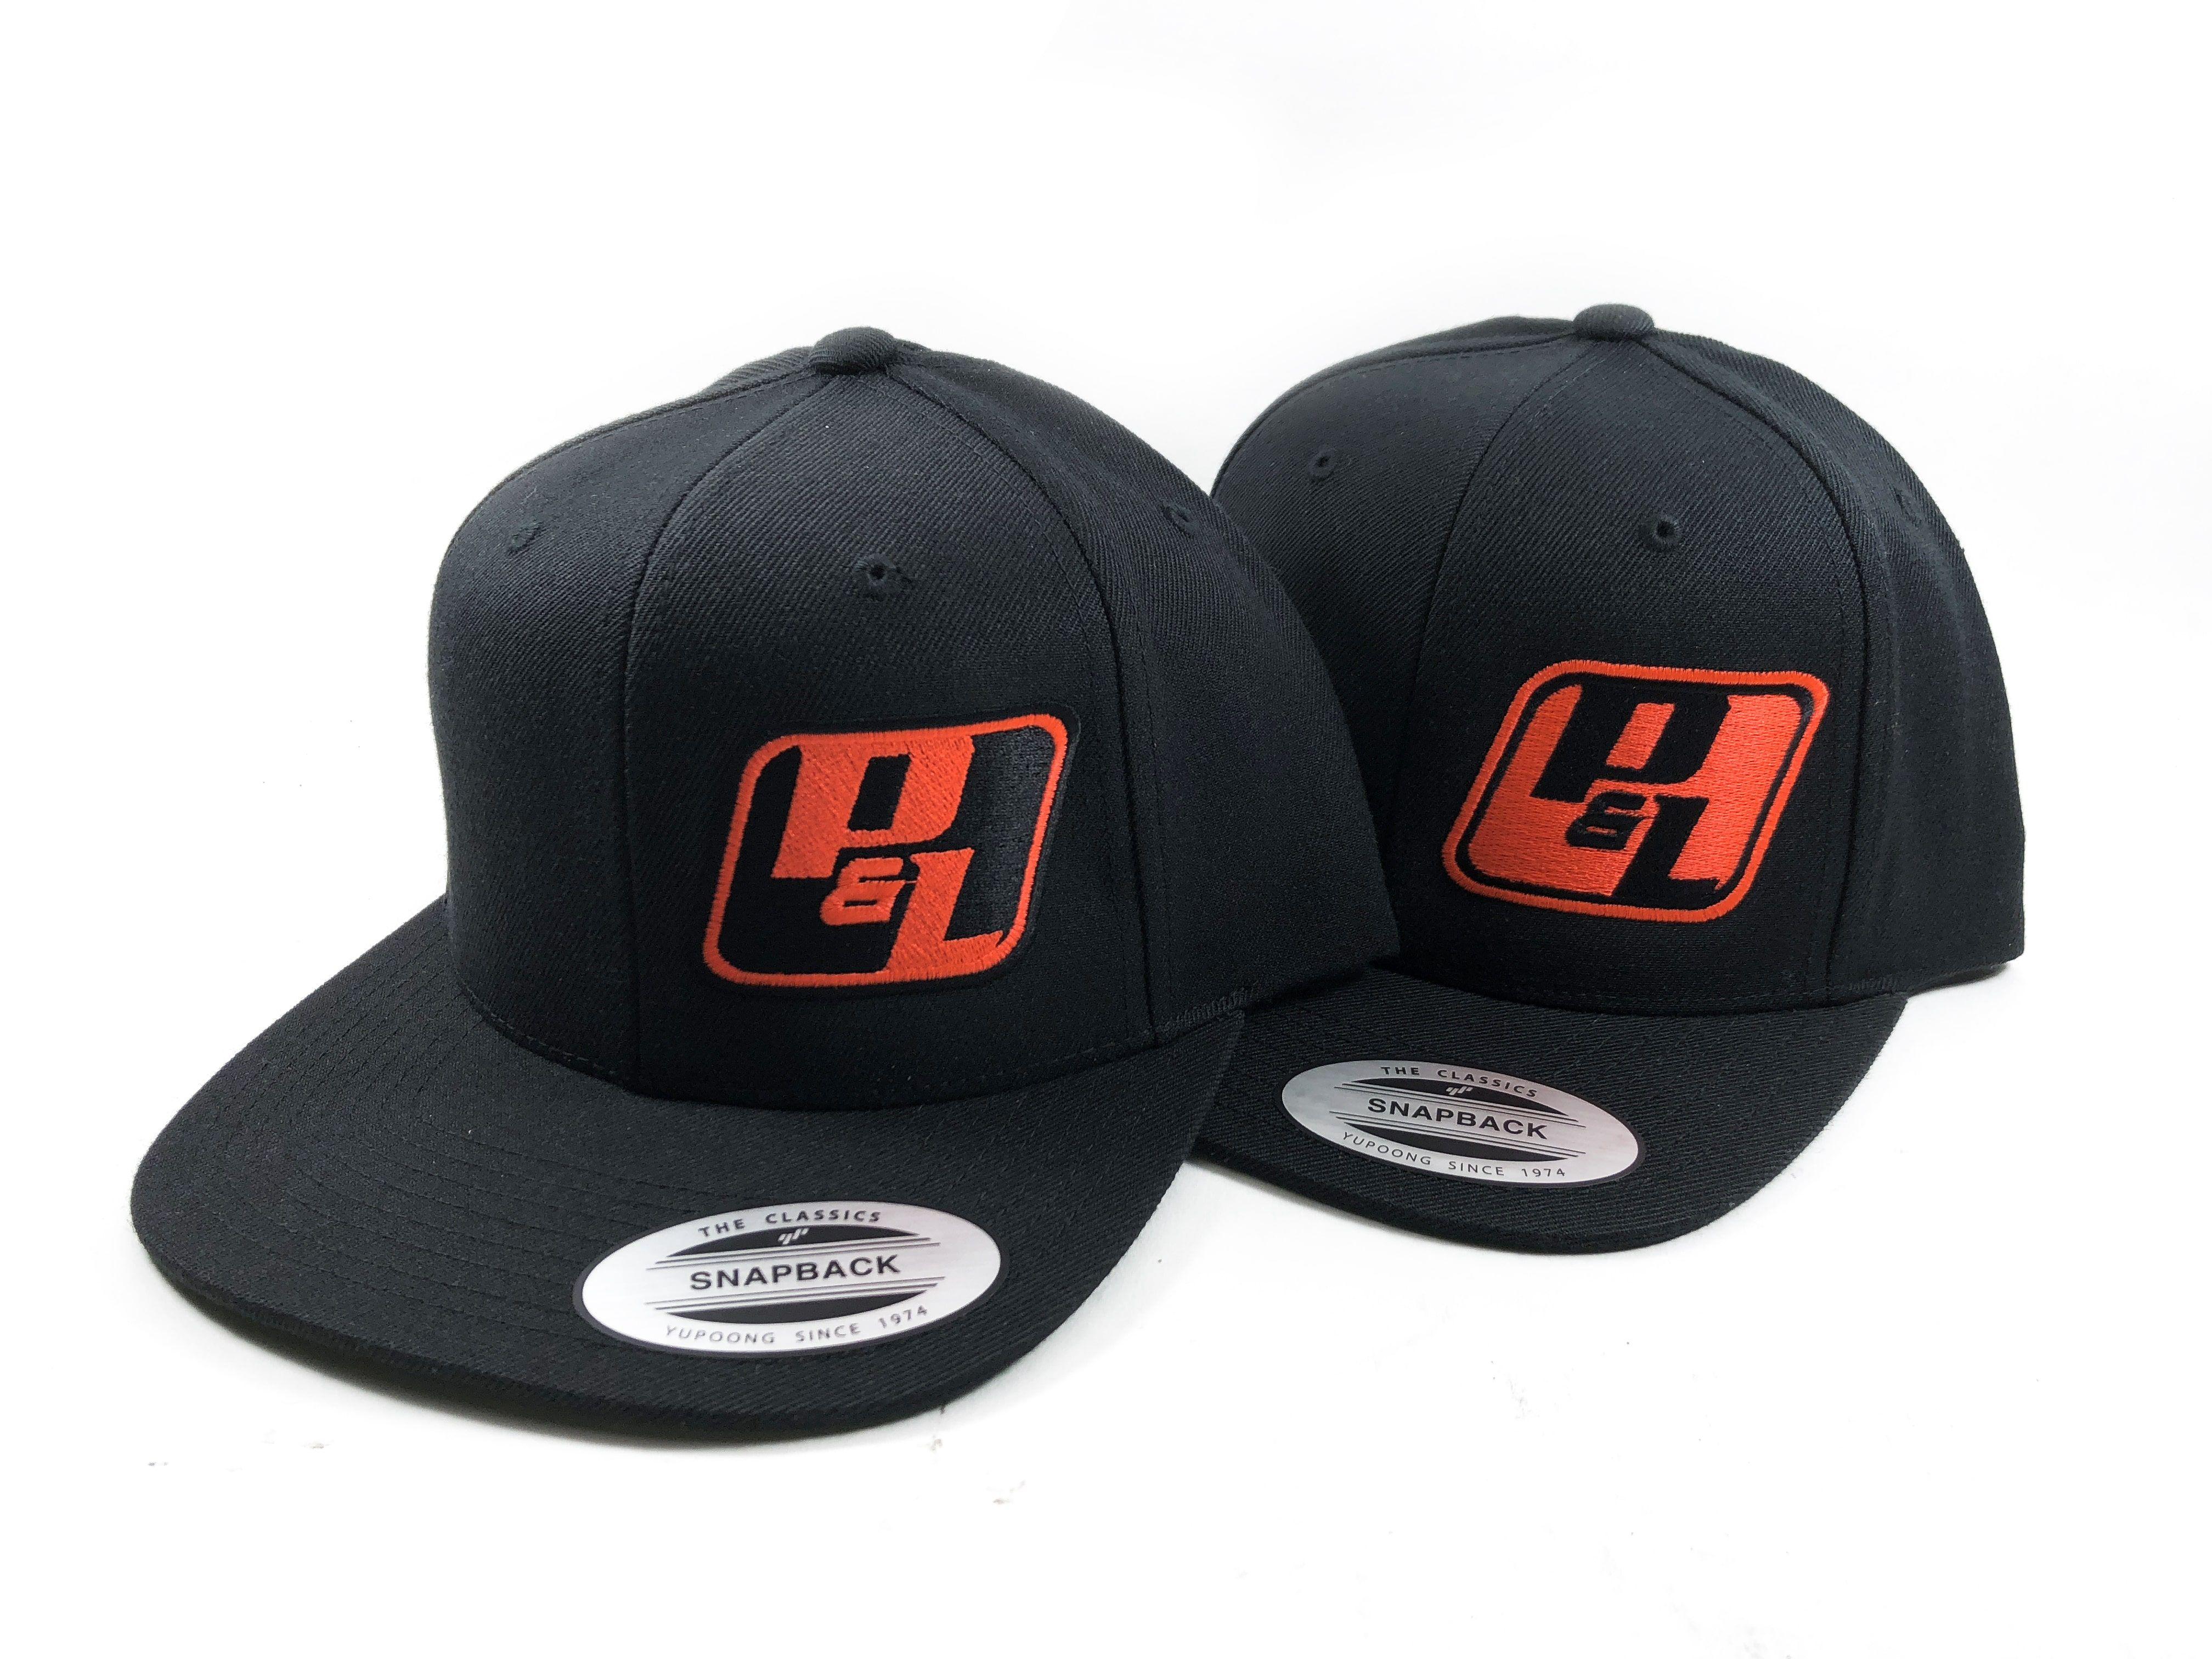 P&L Logo - P&L Motorsports Official Hat